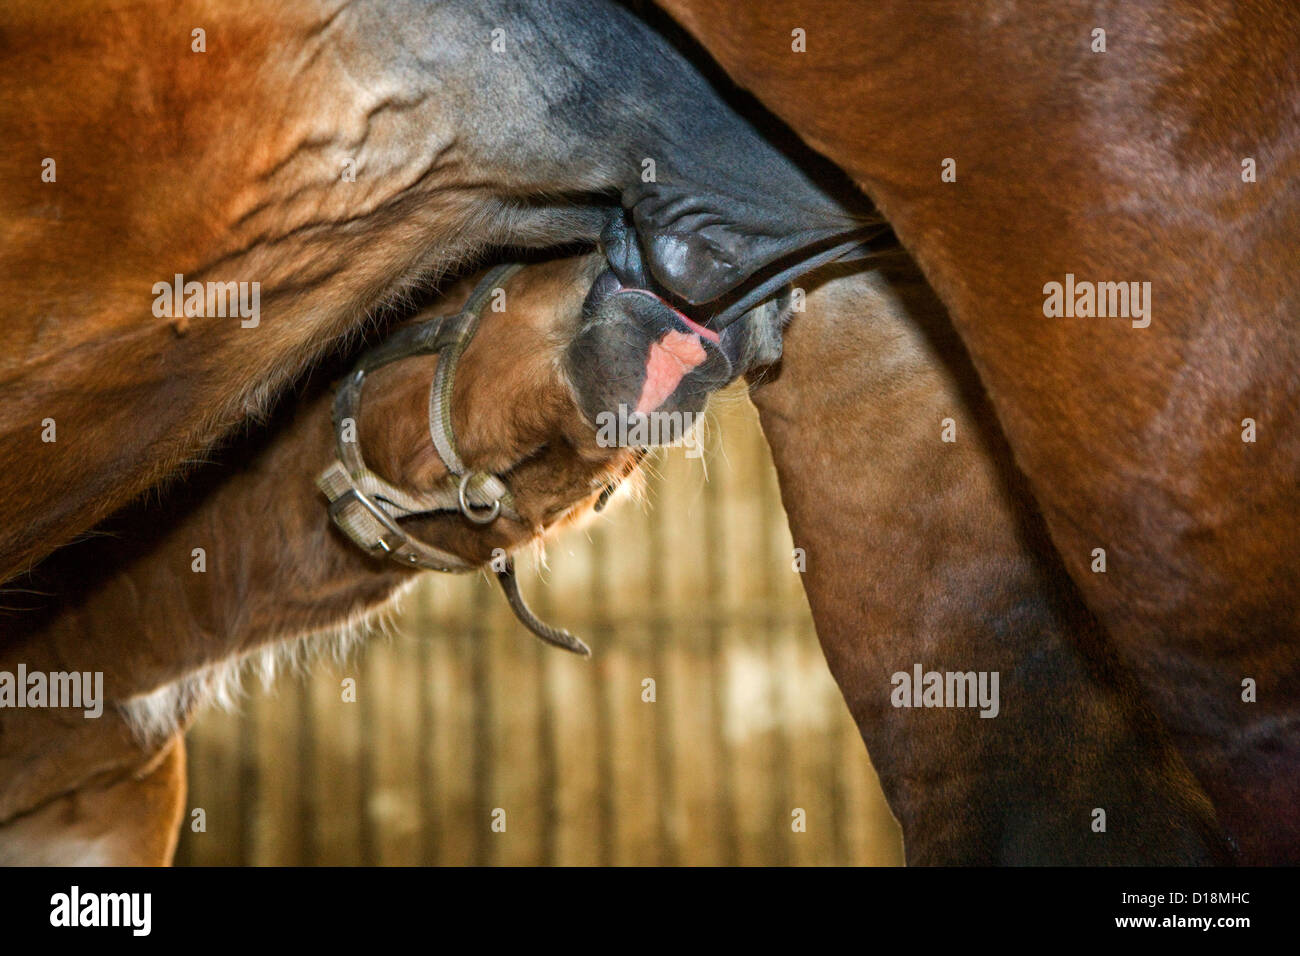 Caballo de tiro belga / pesado belga Horse / Brabançon / Brabante, mare potro lechal, Bélgica Foto de stock